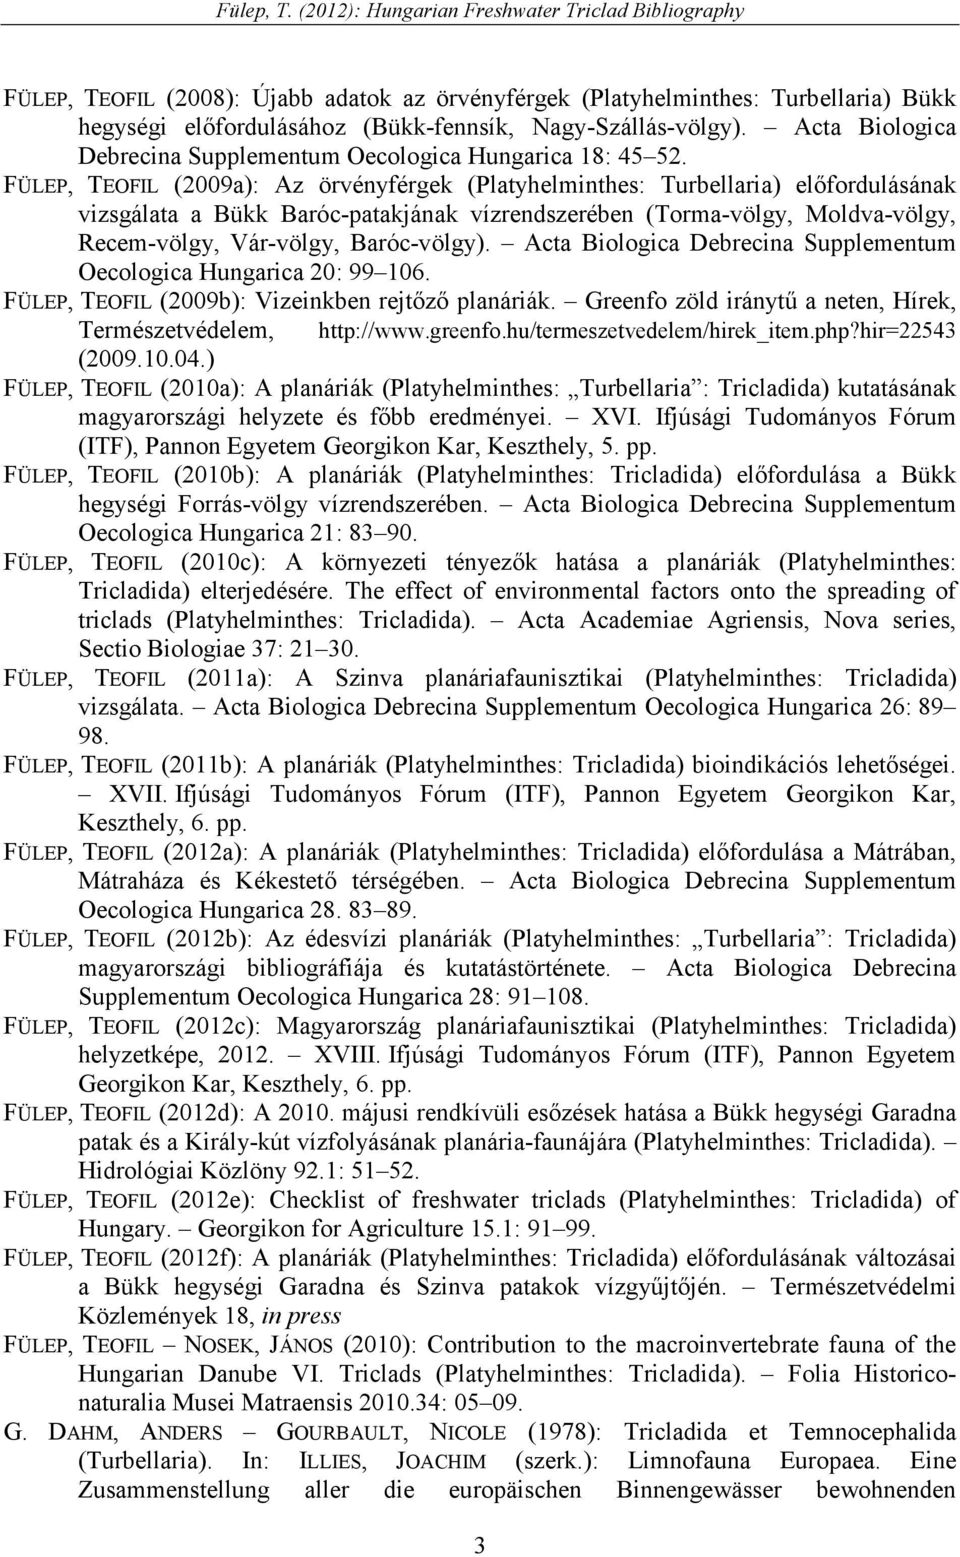 FÜLEP, TEOFIL (2009a): Az örvényférgek (Platyhelminthes: Turbellaria) elıfordulásának vizsgálata a Bükk Baróc-patakjának vízrendszerében (Torma-völgy, Moldva-völgy, Recem-völgy, Vár-völgy,